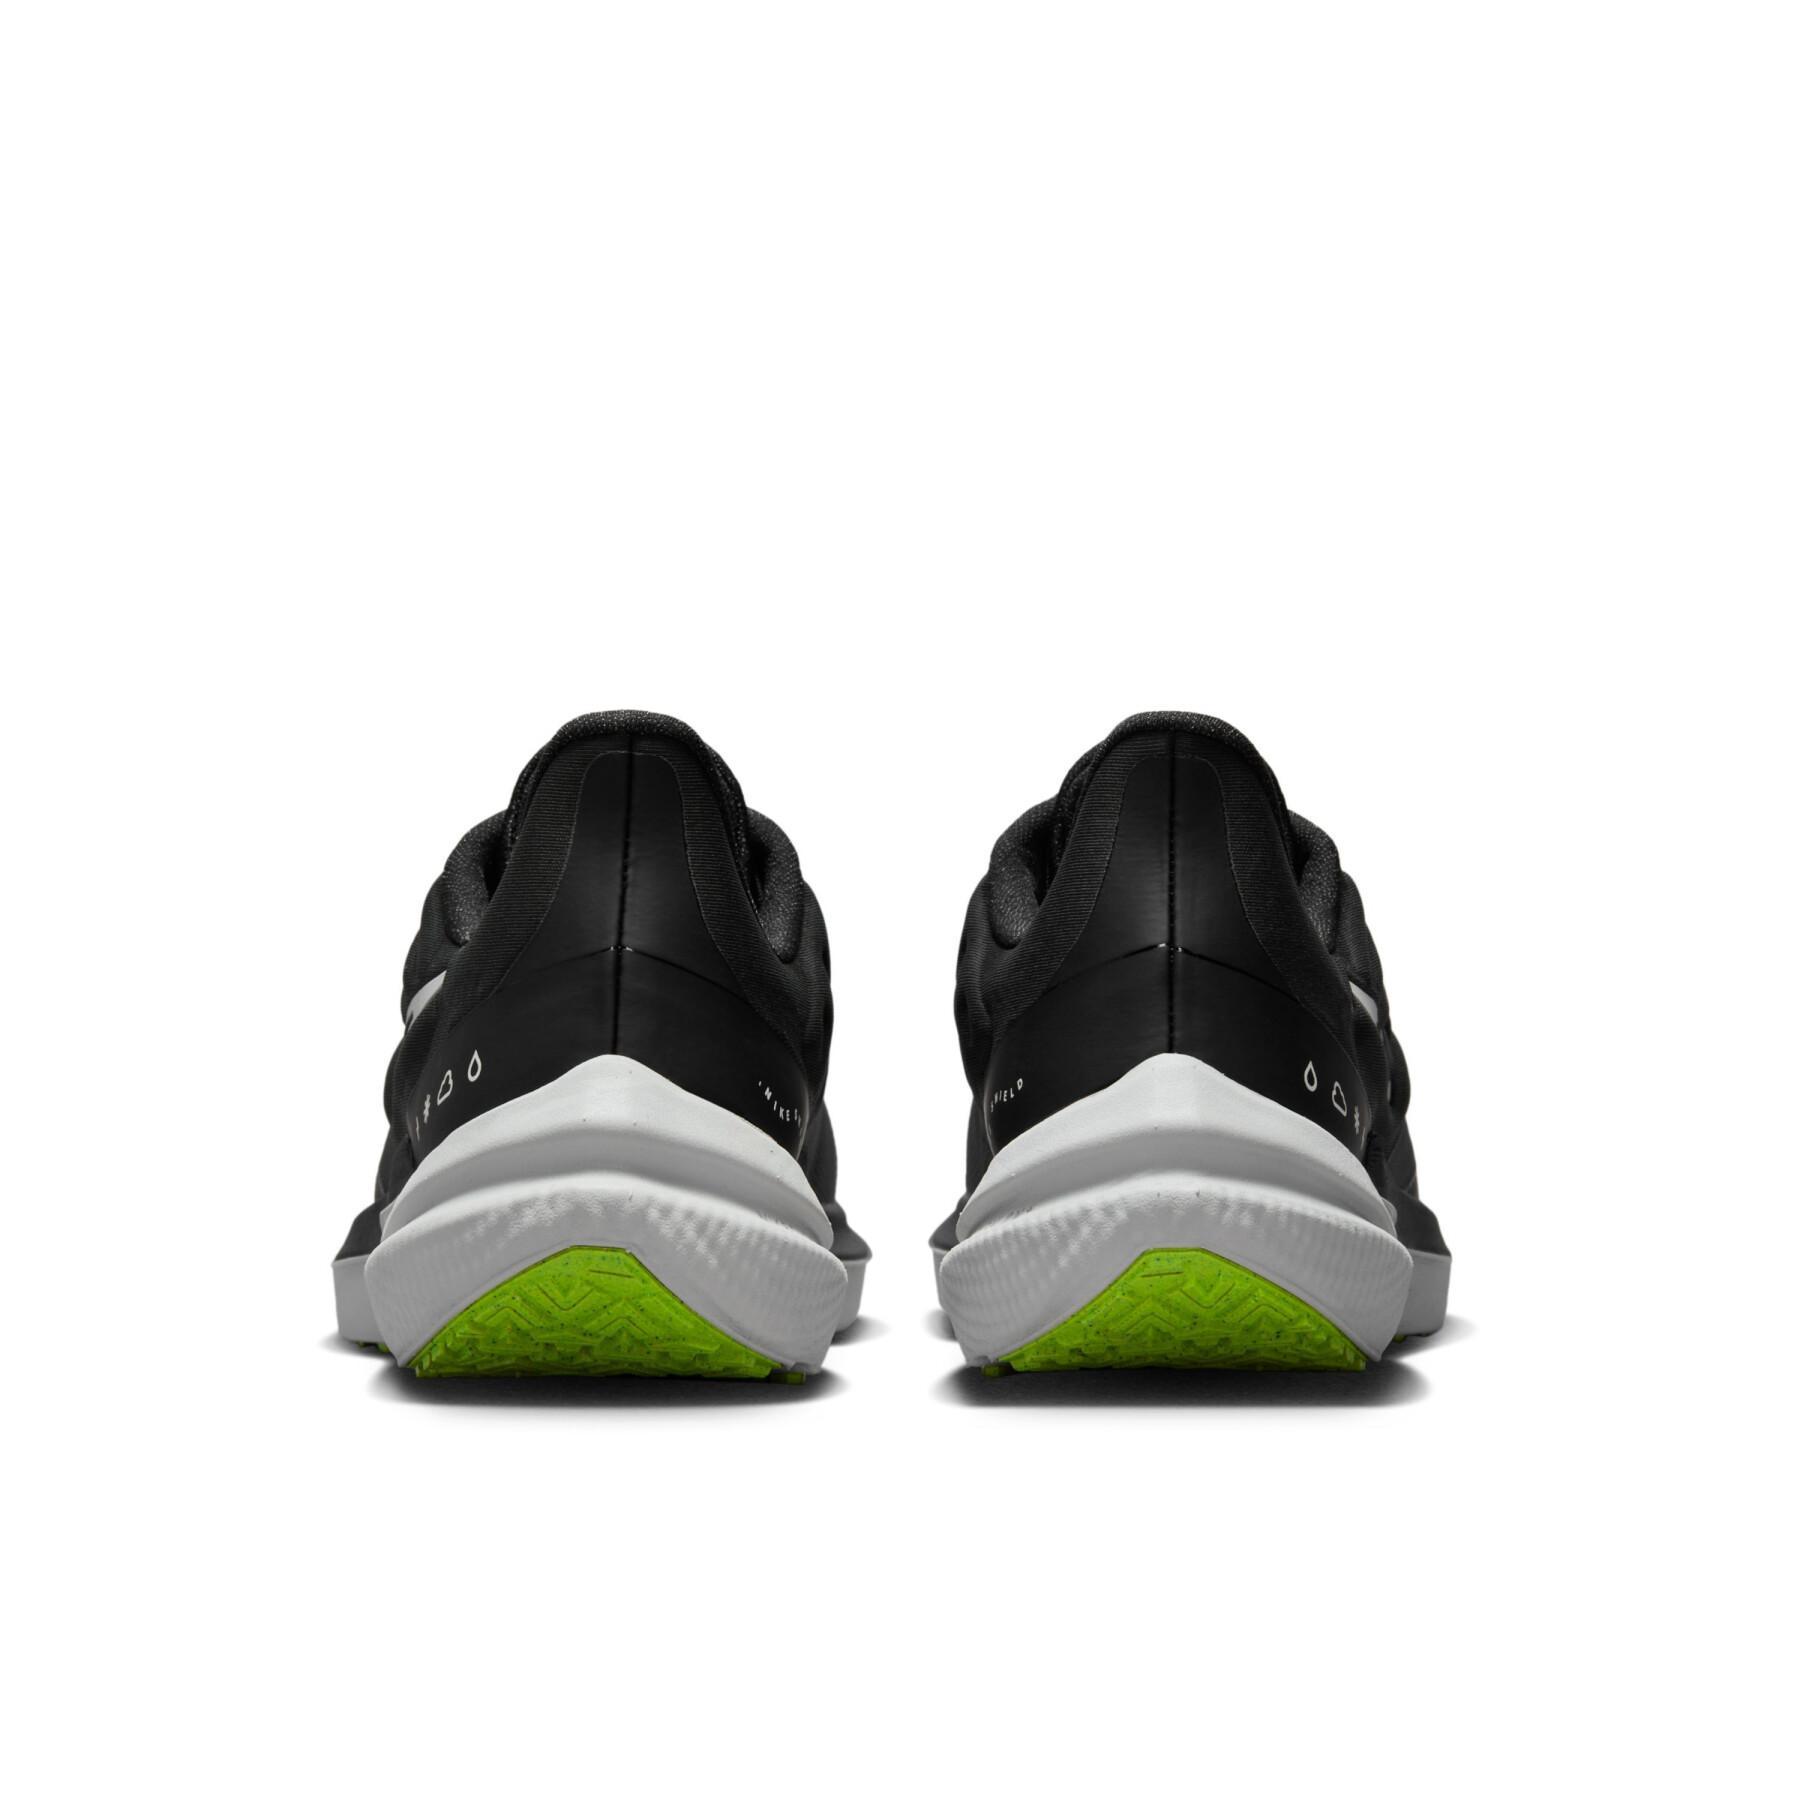 Women's running shoes Nike Air Winflo 9 Shield